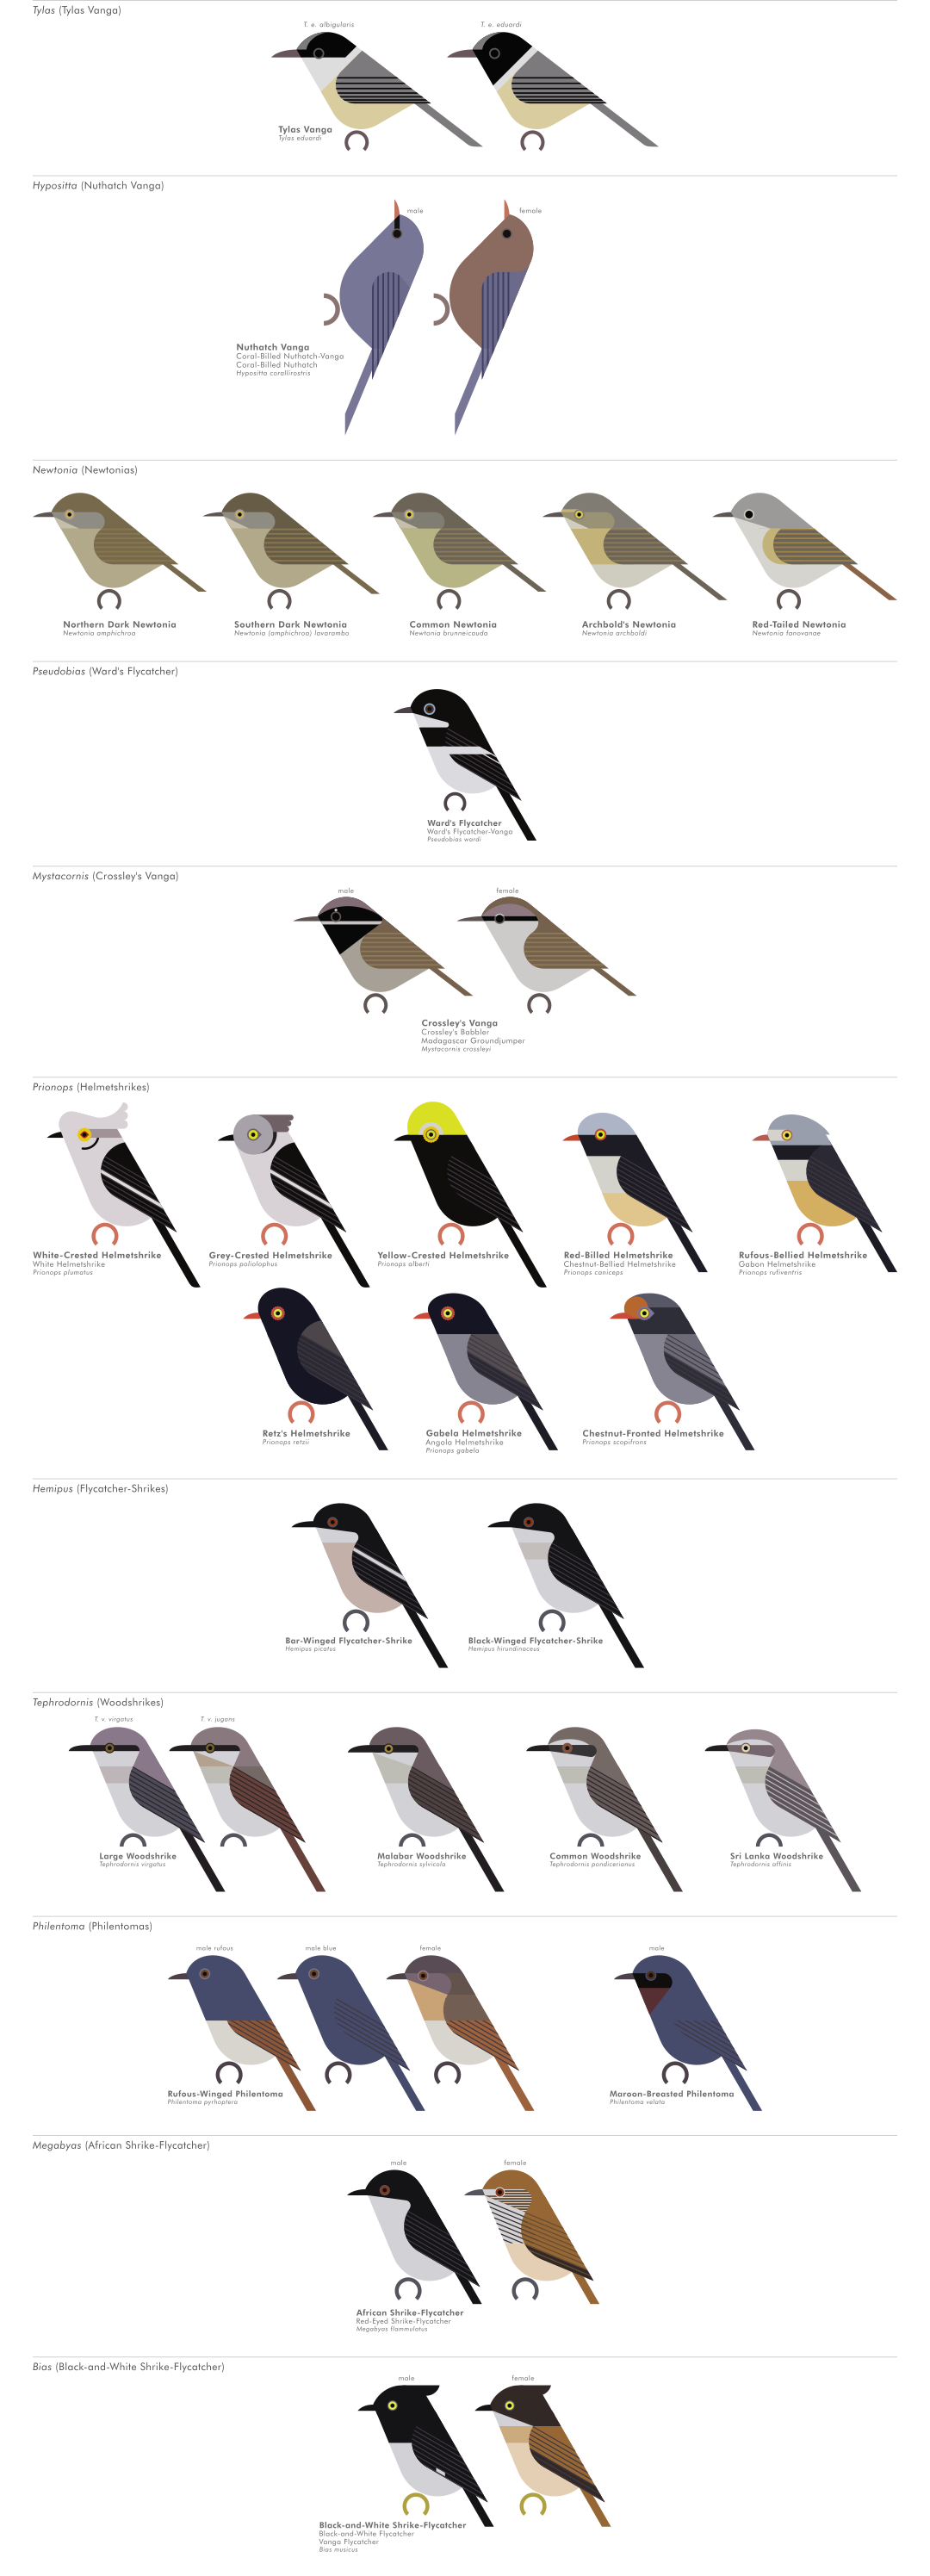 scott partridge - AVE - avian vector encyclopedia - vangas - bird vector art